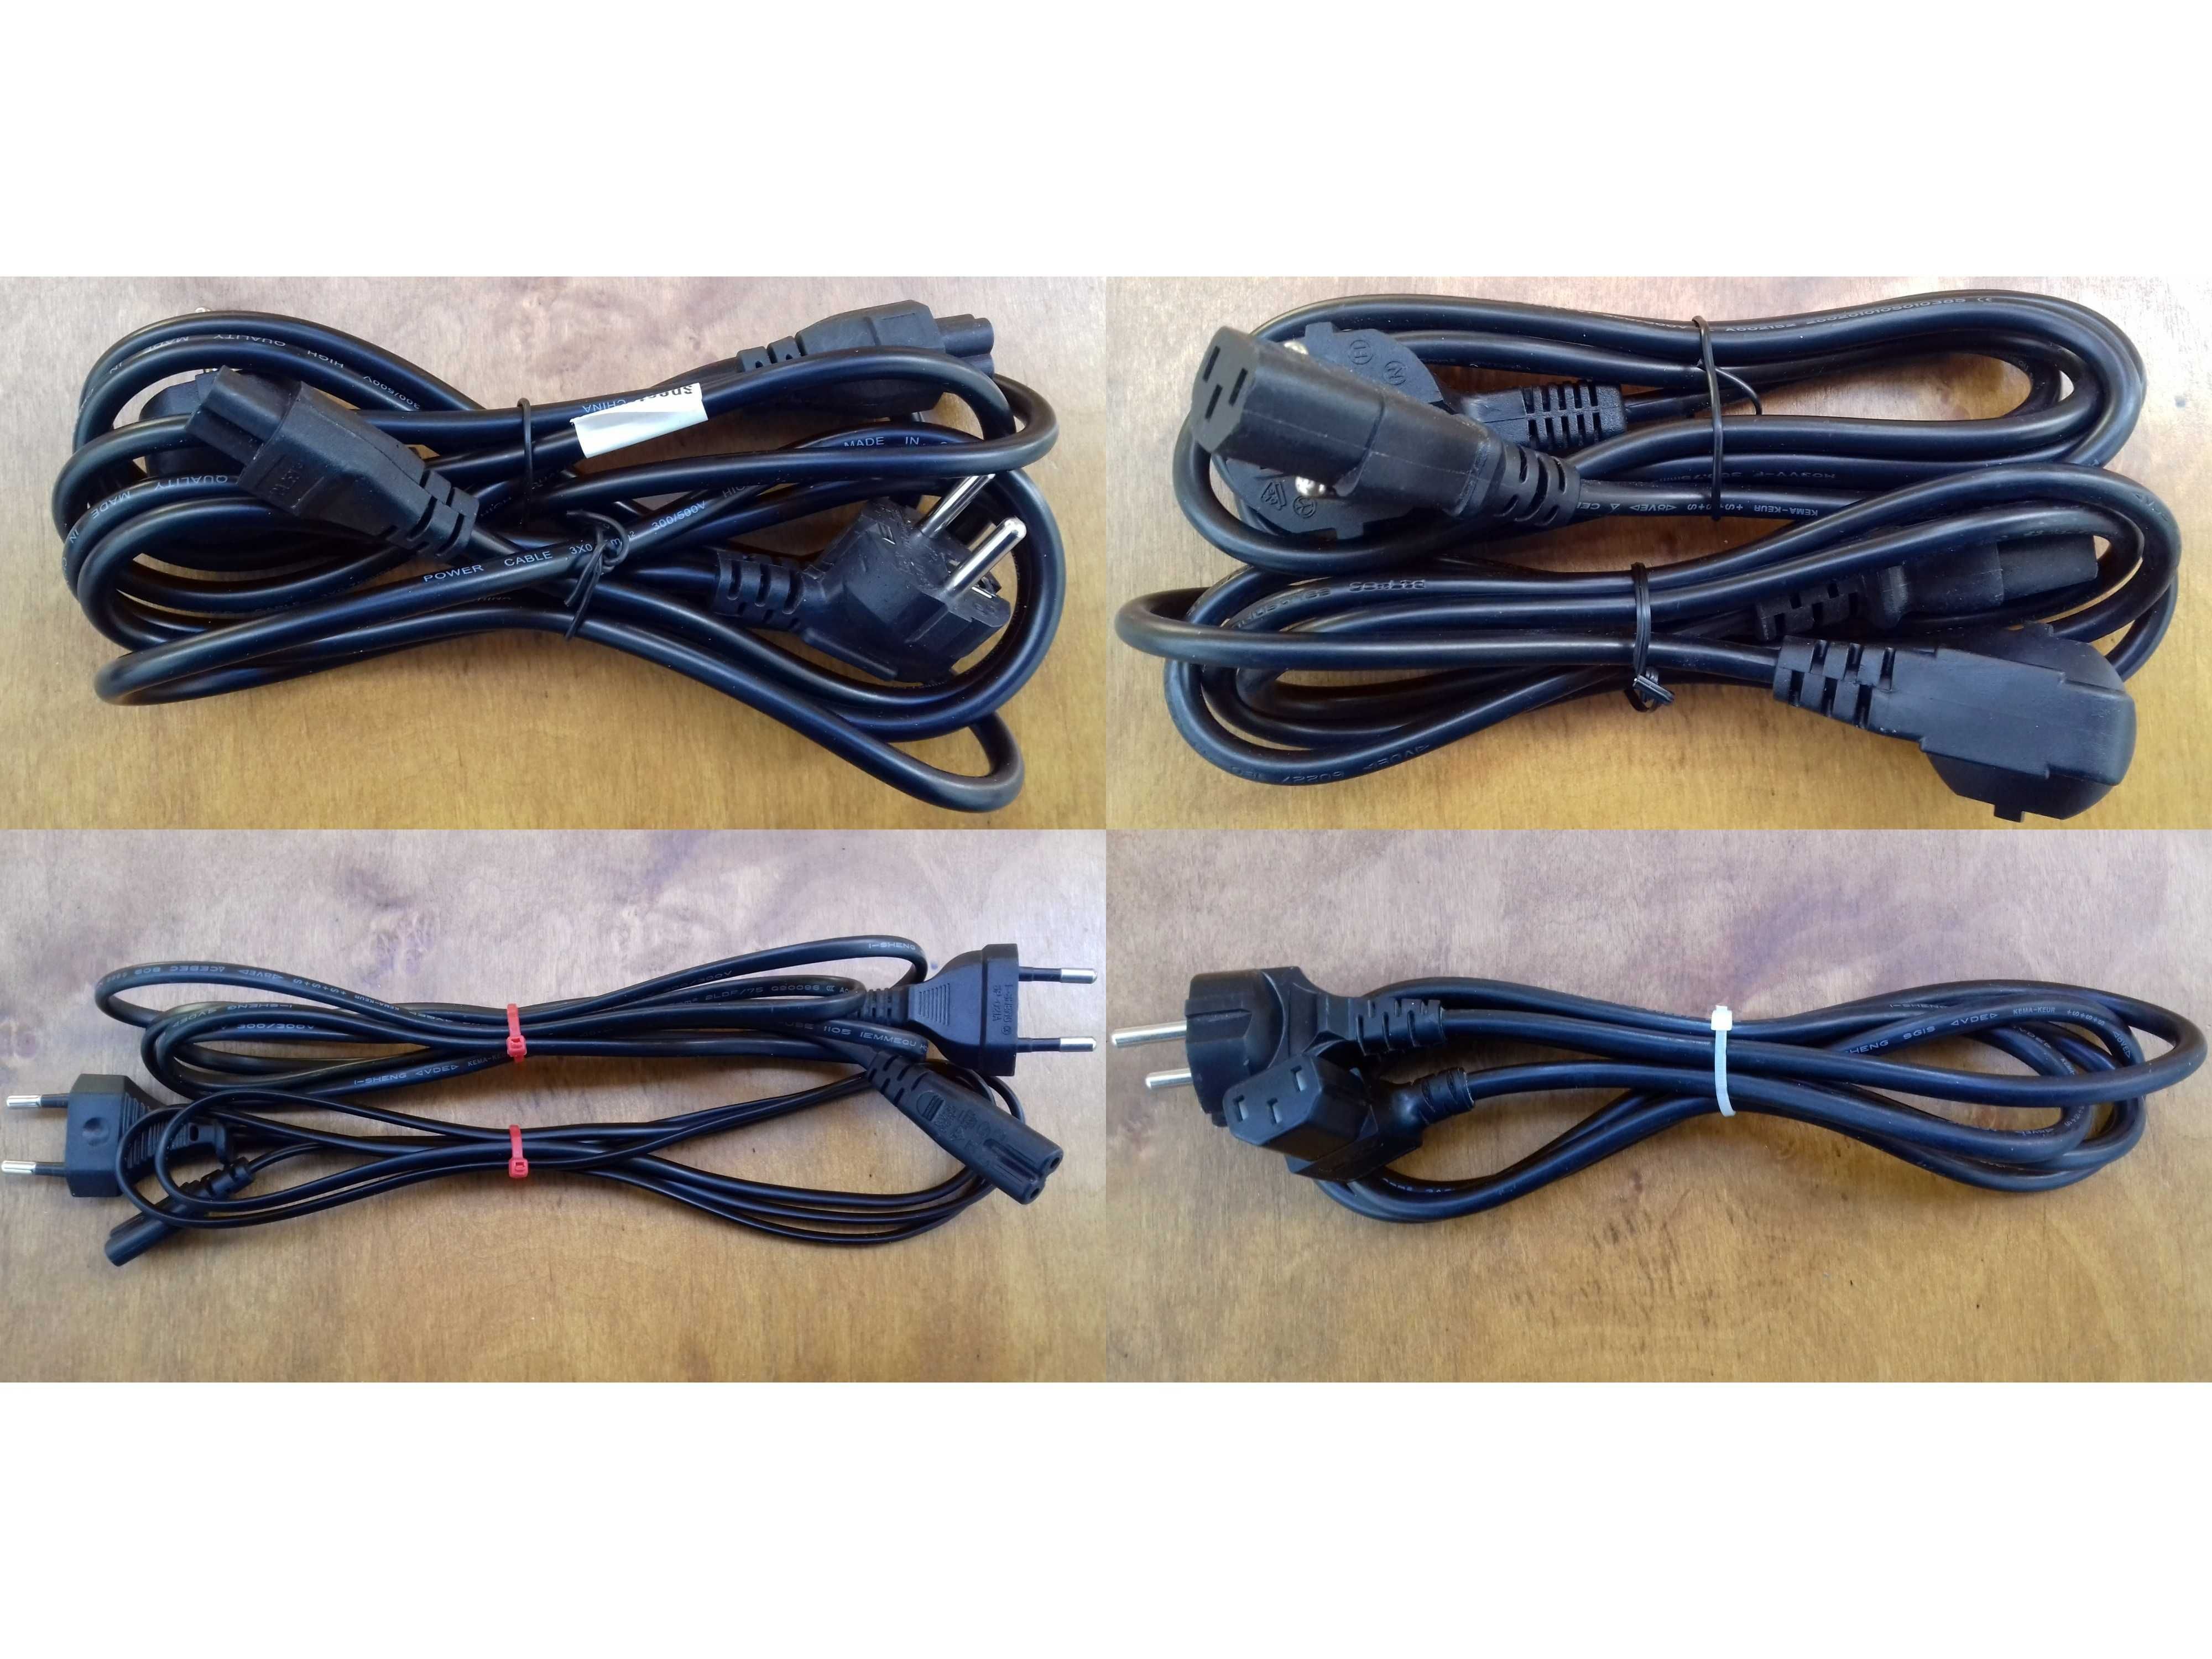 kable / przewody / adaptery / rozgałęźniki / przejściówki